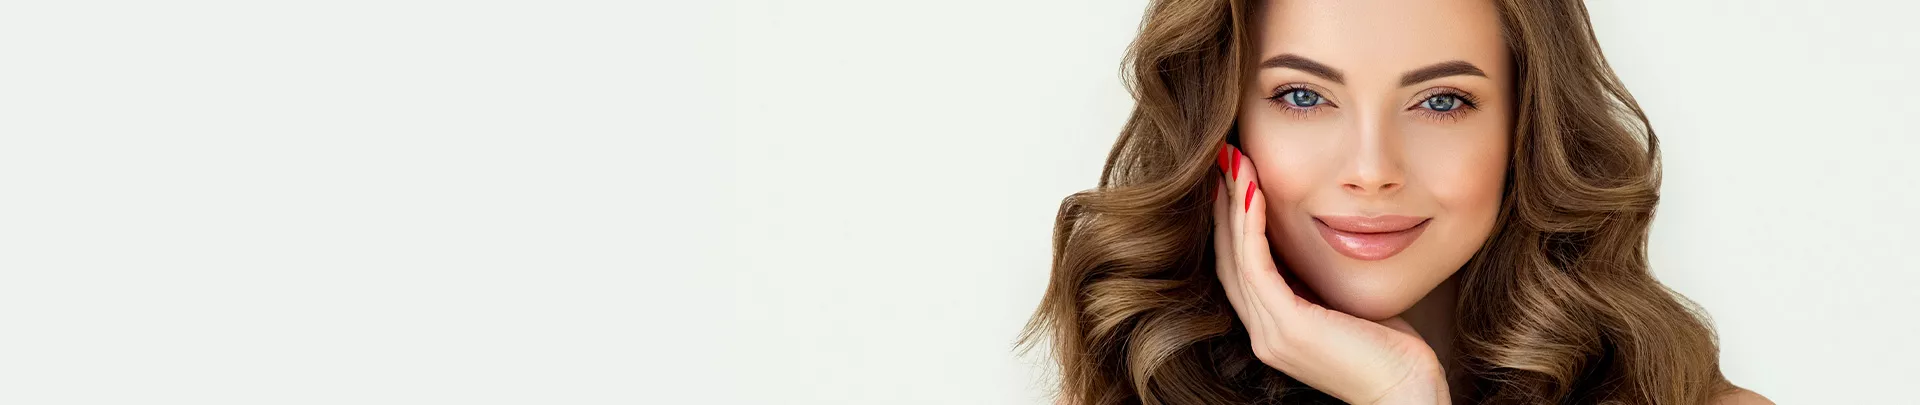 uśmiechnięta kobieta z długimi brązowymi włosami - bannerKontakt